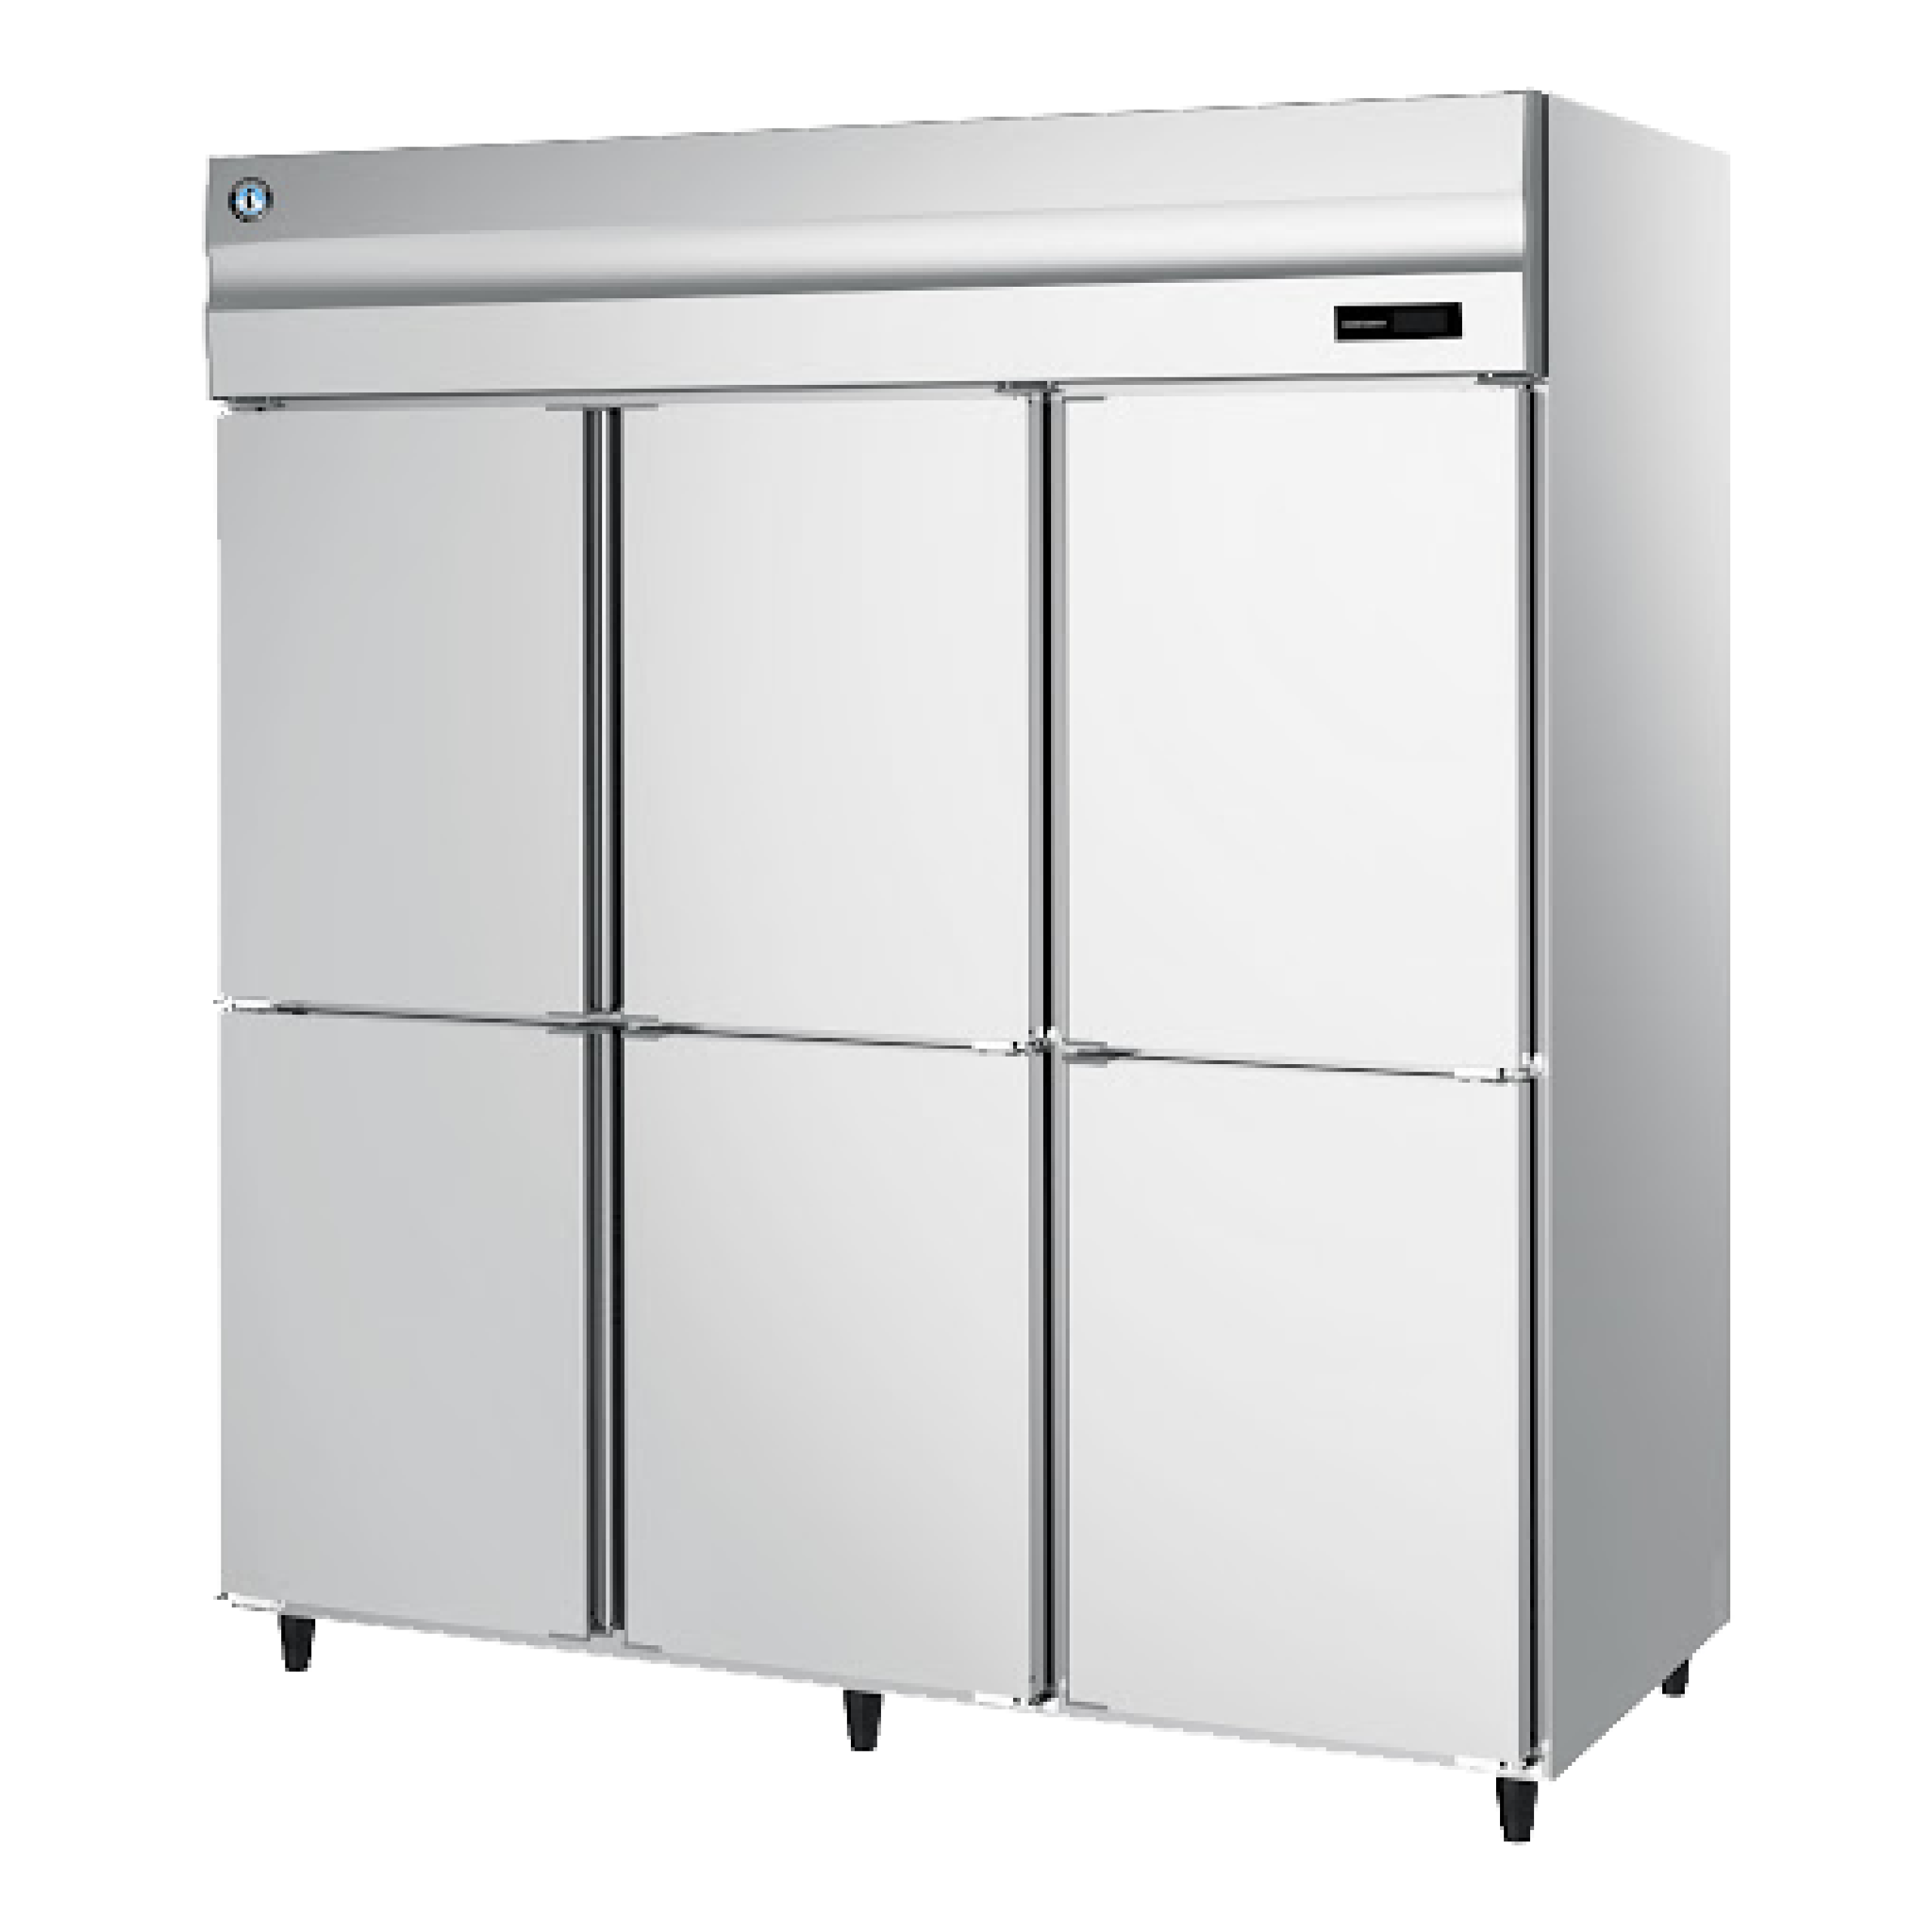  Tủ Lạnh Đứng 6 Cánh Hoshizaki HR-188MA-S 